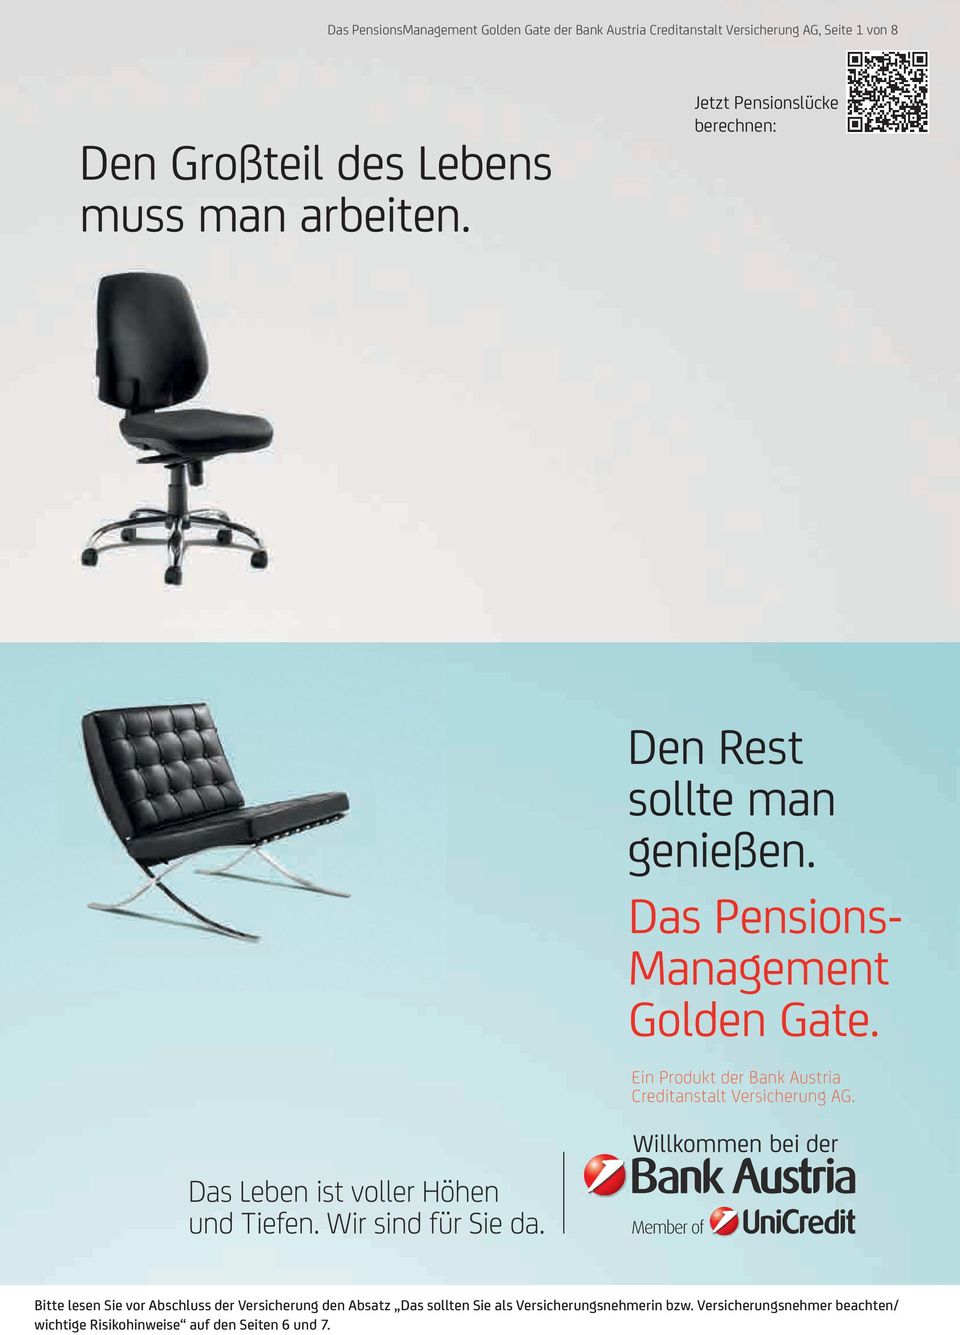 Das Pensions Management Golden Gate. Ein Produkt der Bank Austria Creditanstalt Versicherung AG.